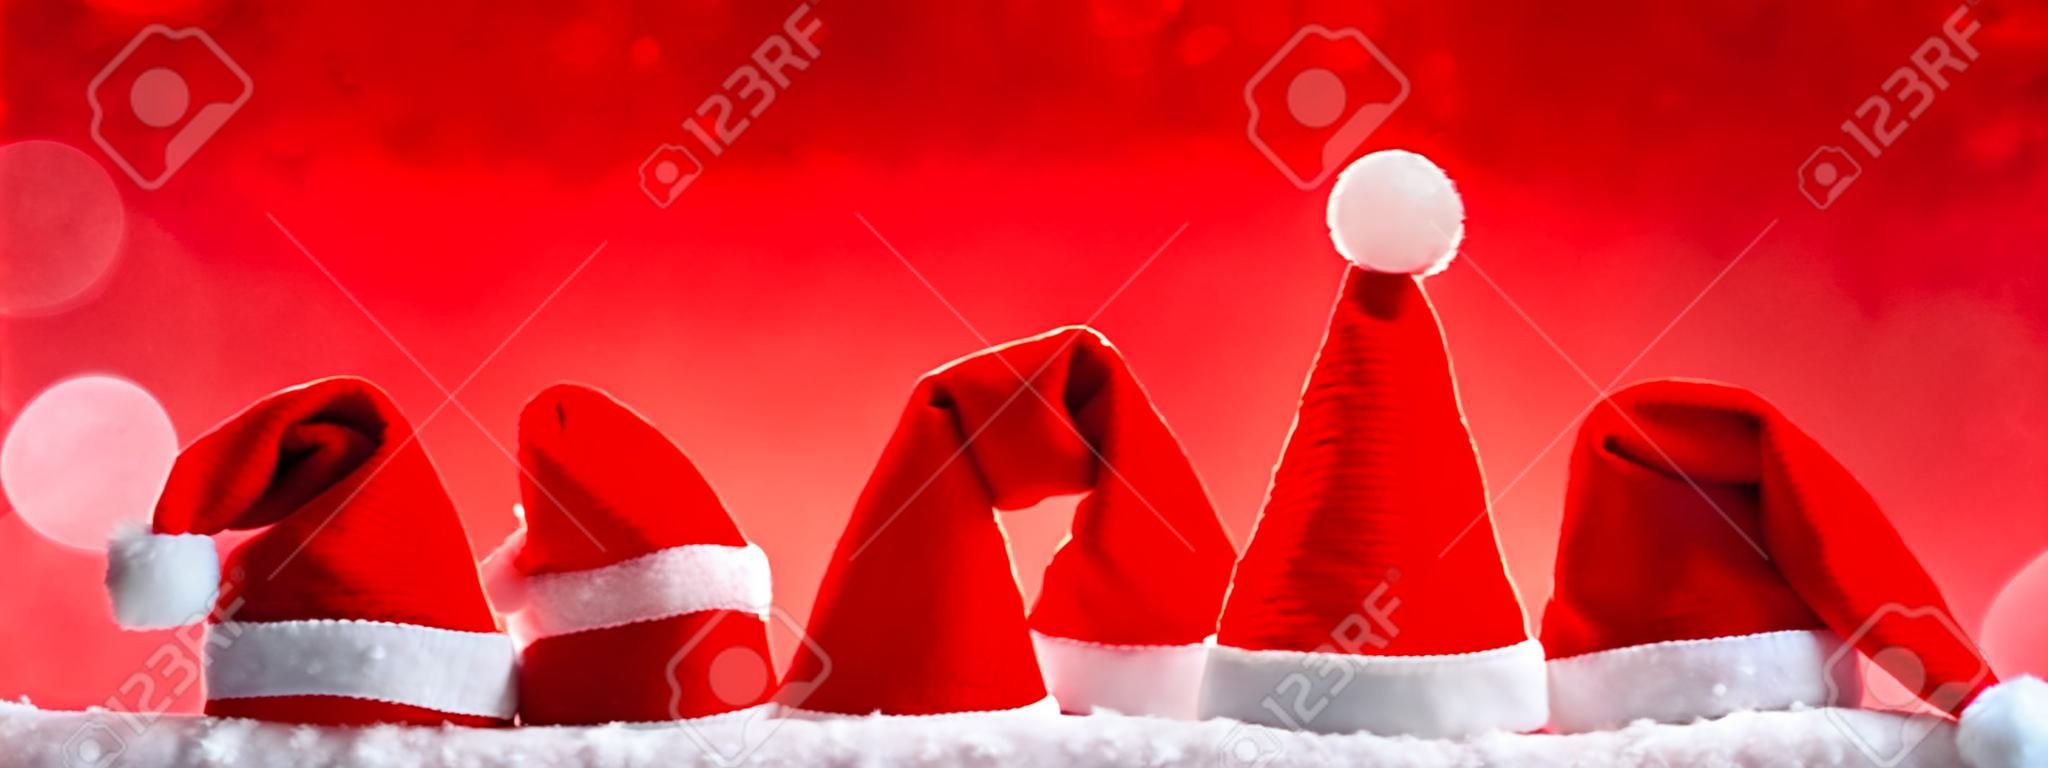 Sept rouge de Père Noël chapeaux isolés sur background.Christmas rouges sur fond rouge avec de Noël hats.Red chapeaux de Noël.